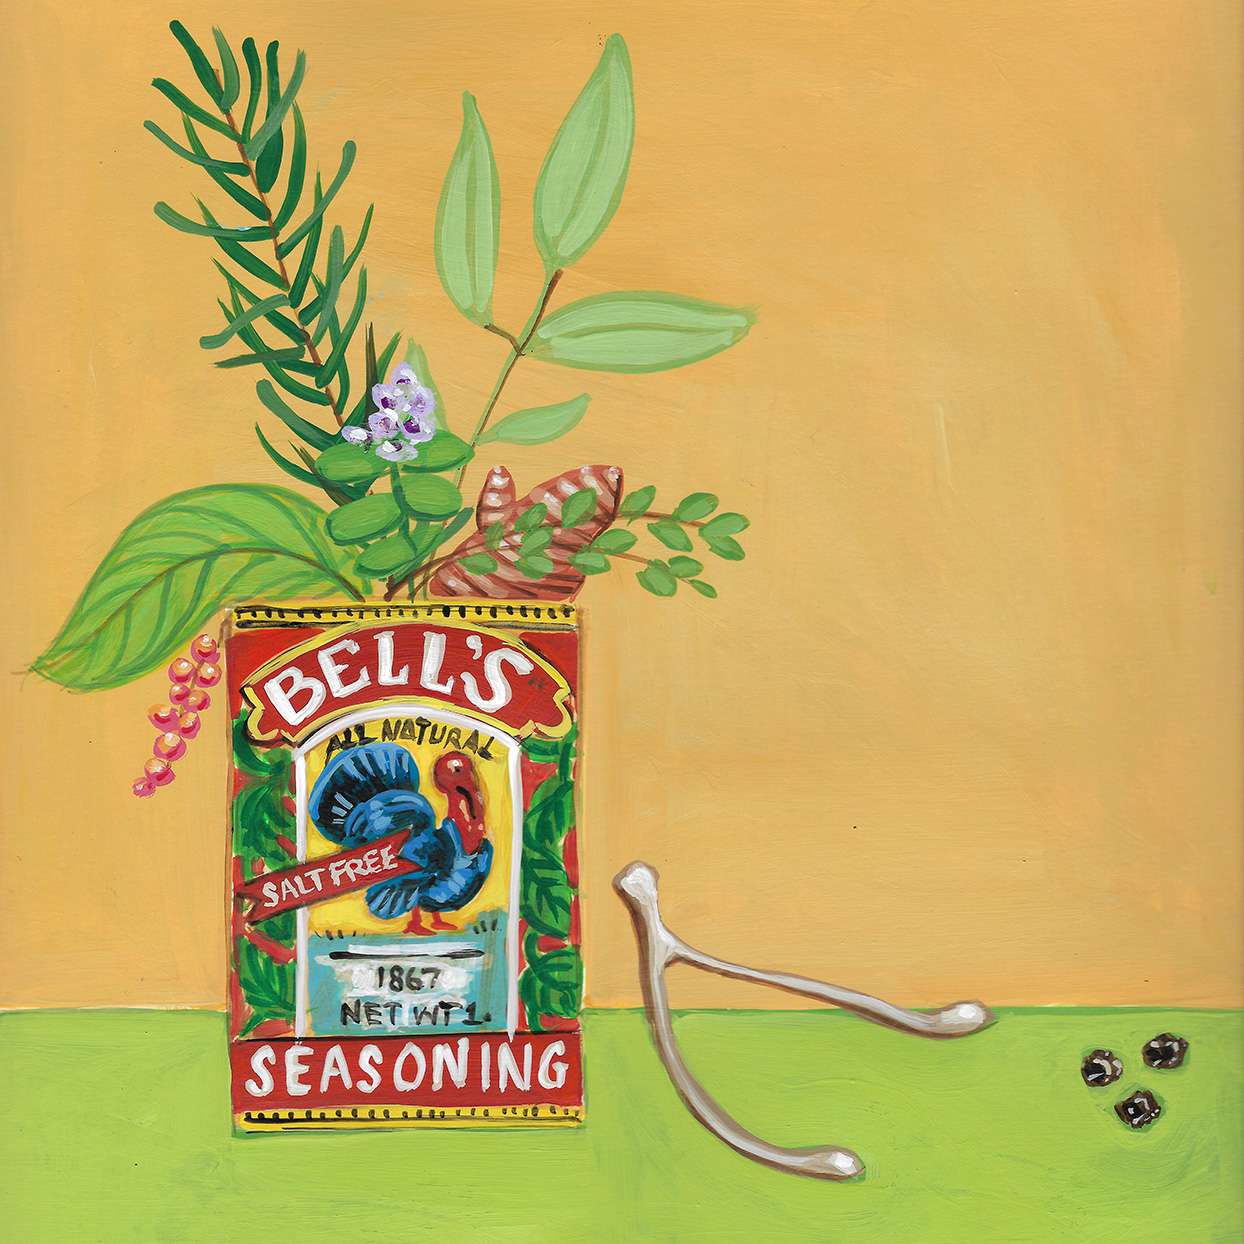 An illustration of Bell's Seasoning